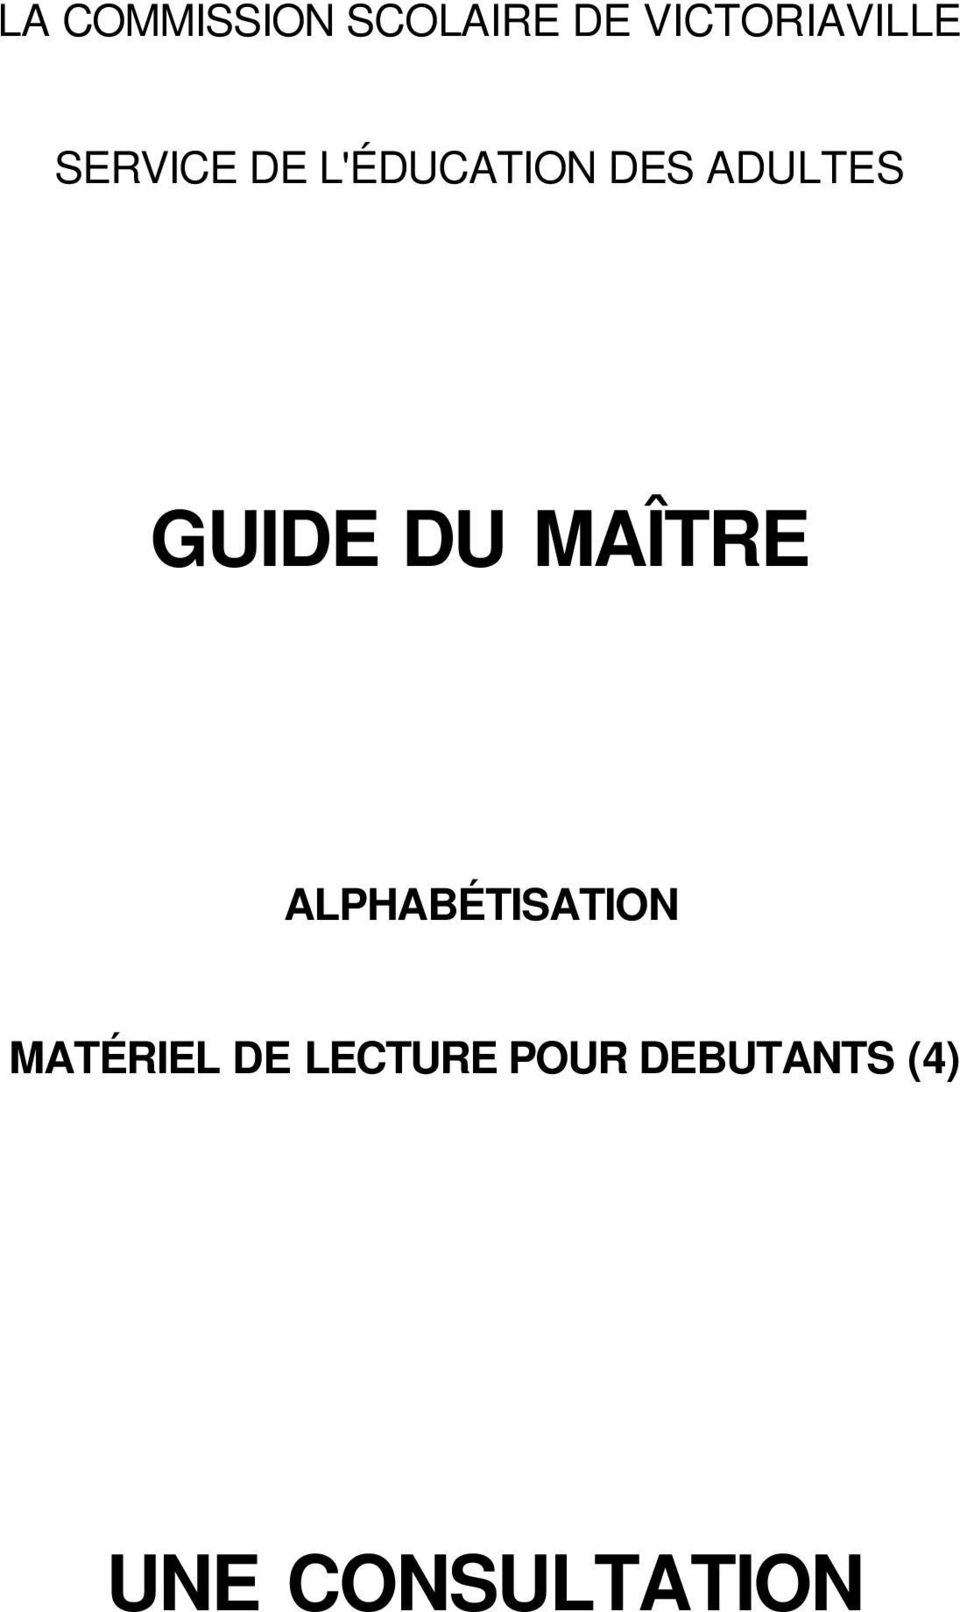 DU MAÎTRE ALPHABÉTISATION MATÉRIEL DE